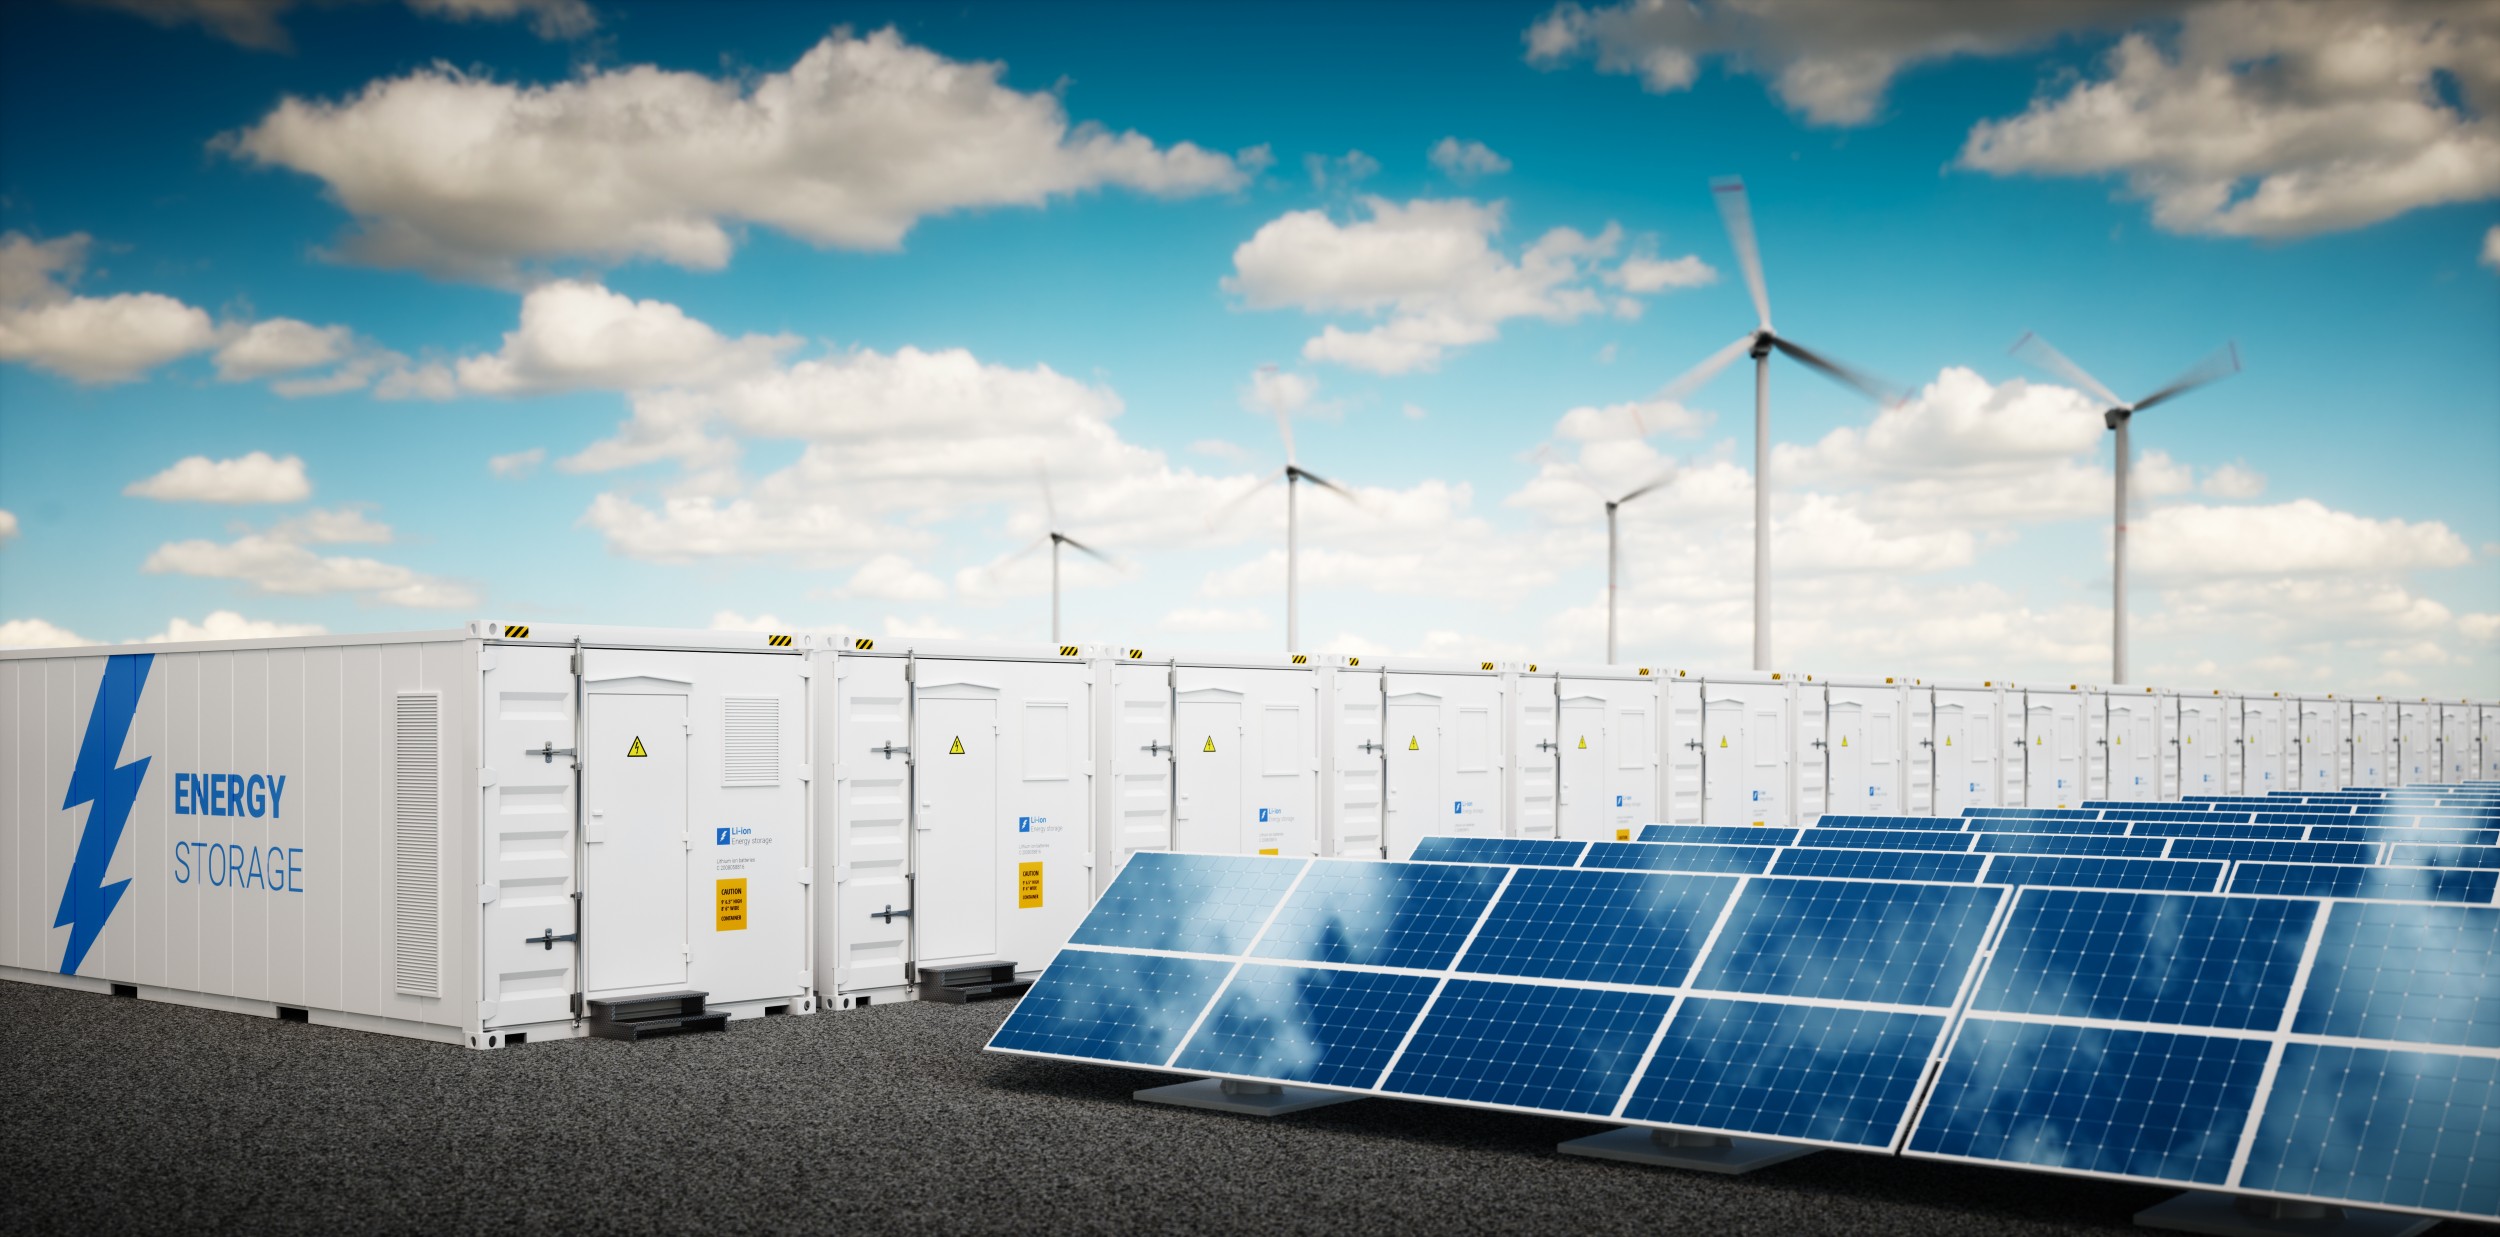 La production décentralisée d'énergie solaire ou éolienne nécessite des capacités de stockage locales dans des batteries stationnaires. De nouveaux contribuent à optimiser ce stockage.